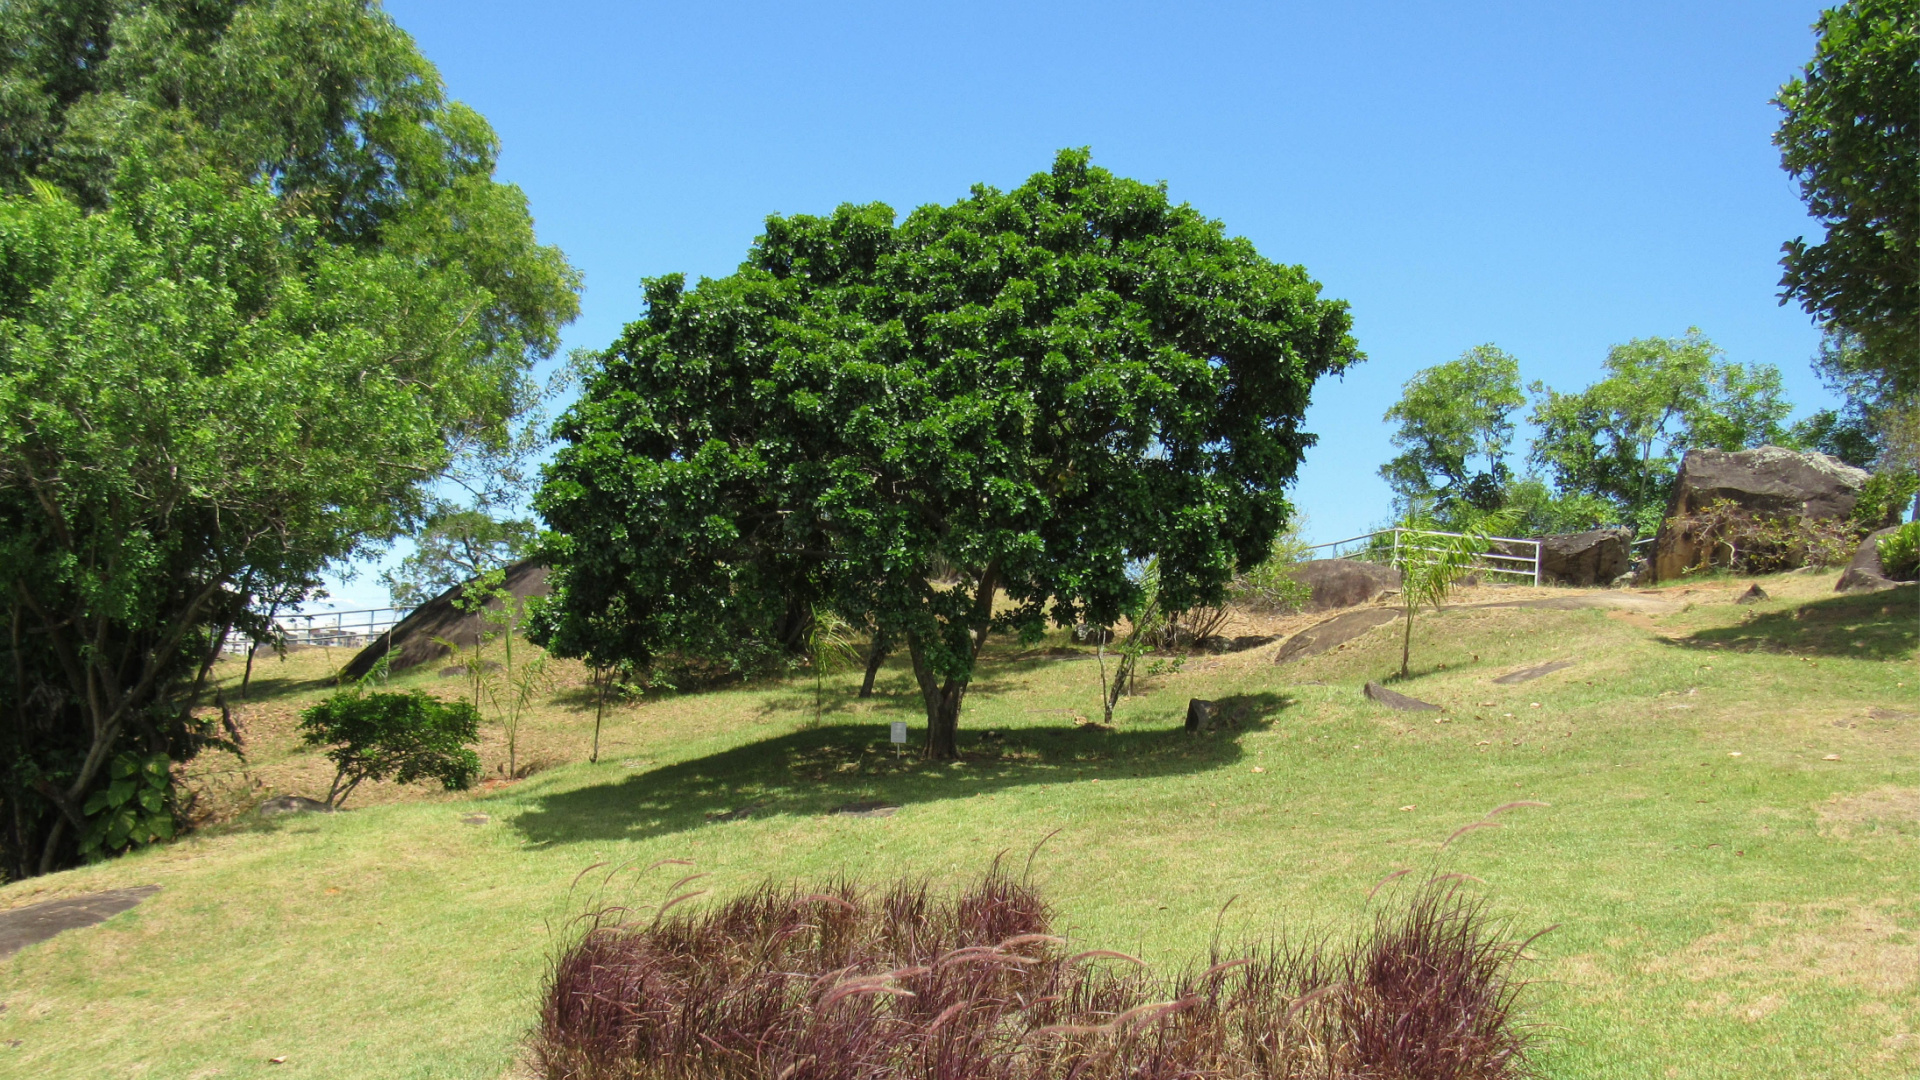 Onde encontrar o pau-brasil: veja destinos para contemplar a árvore símbolo nacional